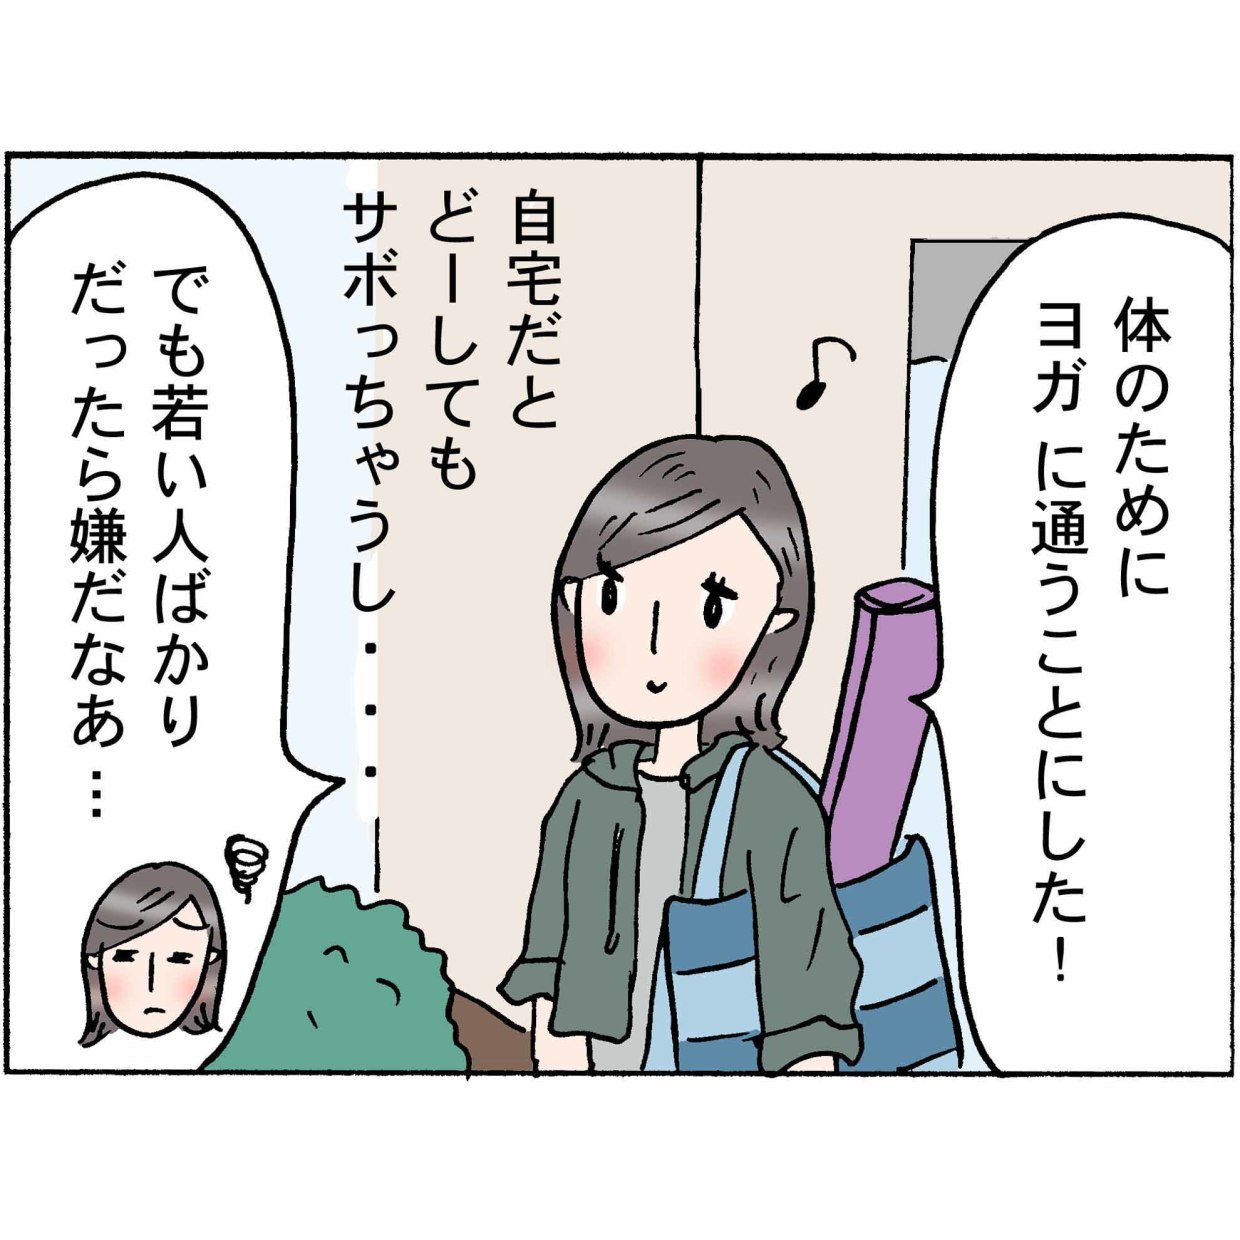 4コマ漫画 “佐藤くみ子”の日常